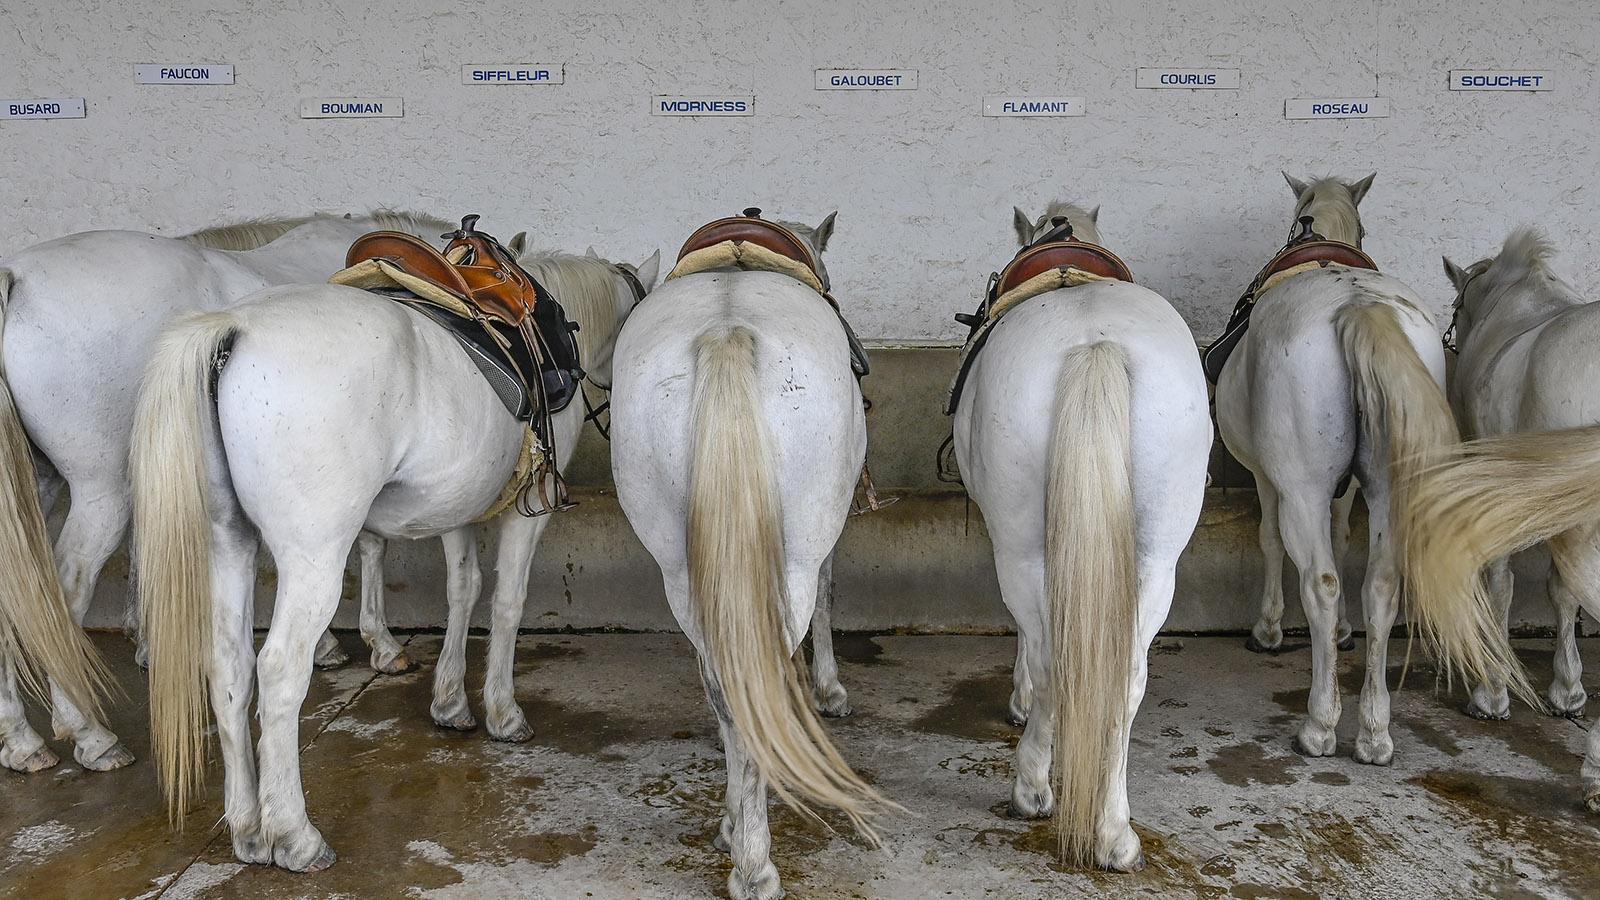 Im Stall stehen die berühmten weißen Pferde der Camargue – sie können für Ausritte ausgeliehen werden. Foto: Hilke Maunder